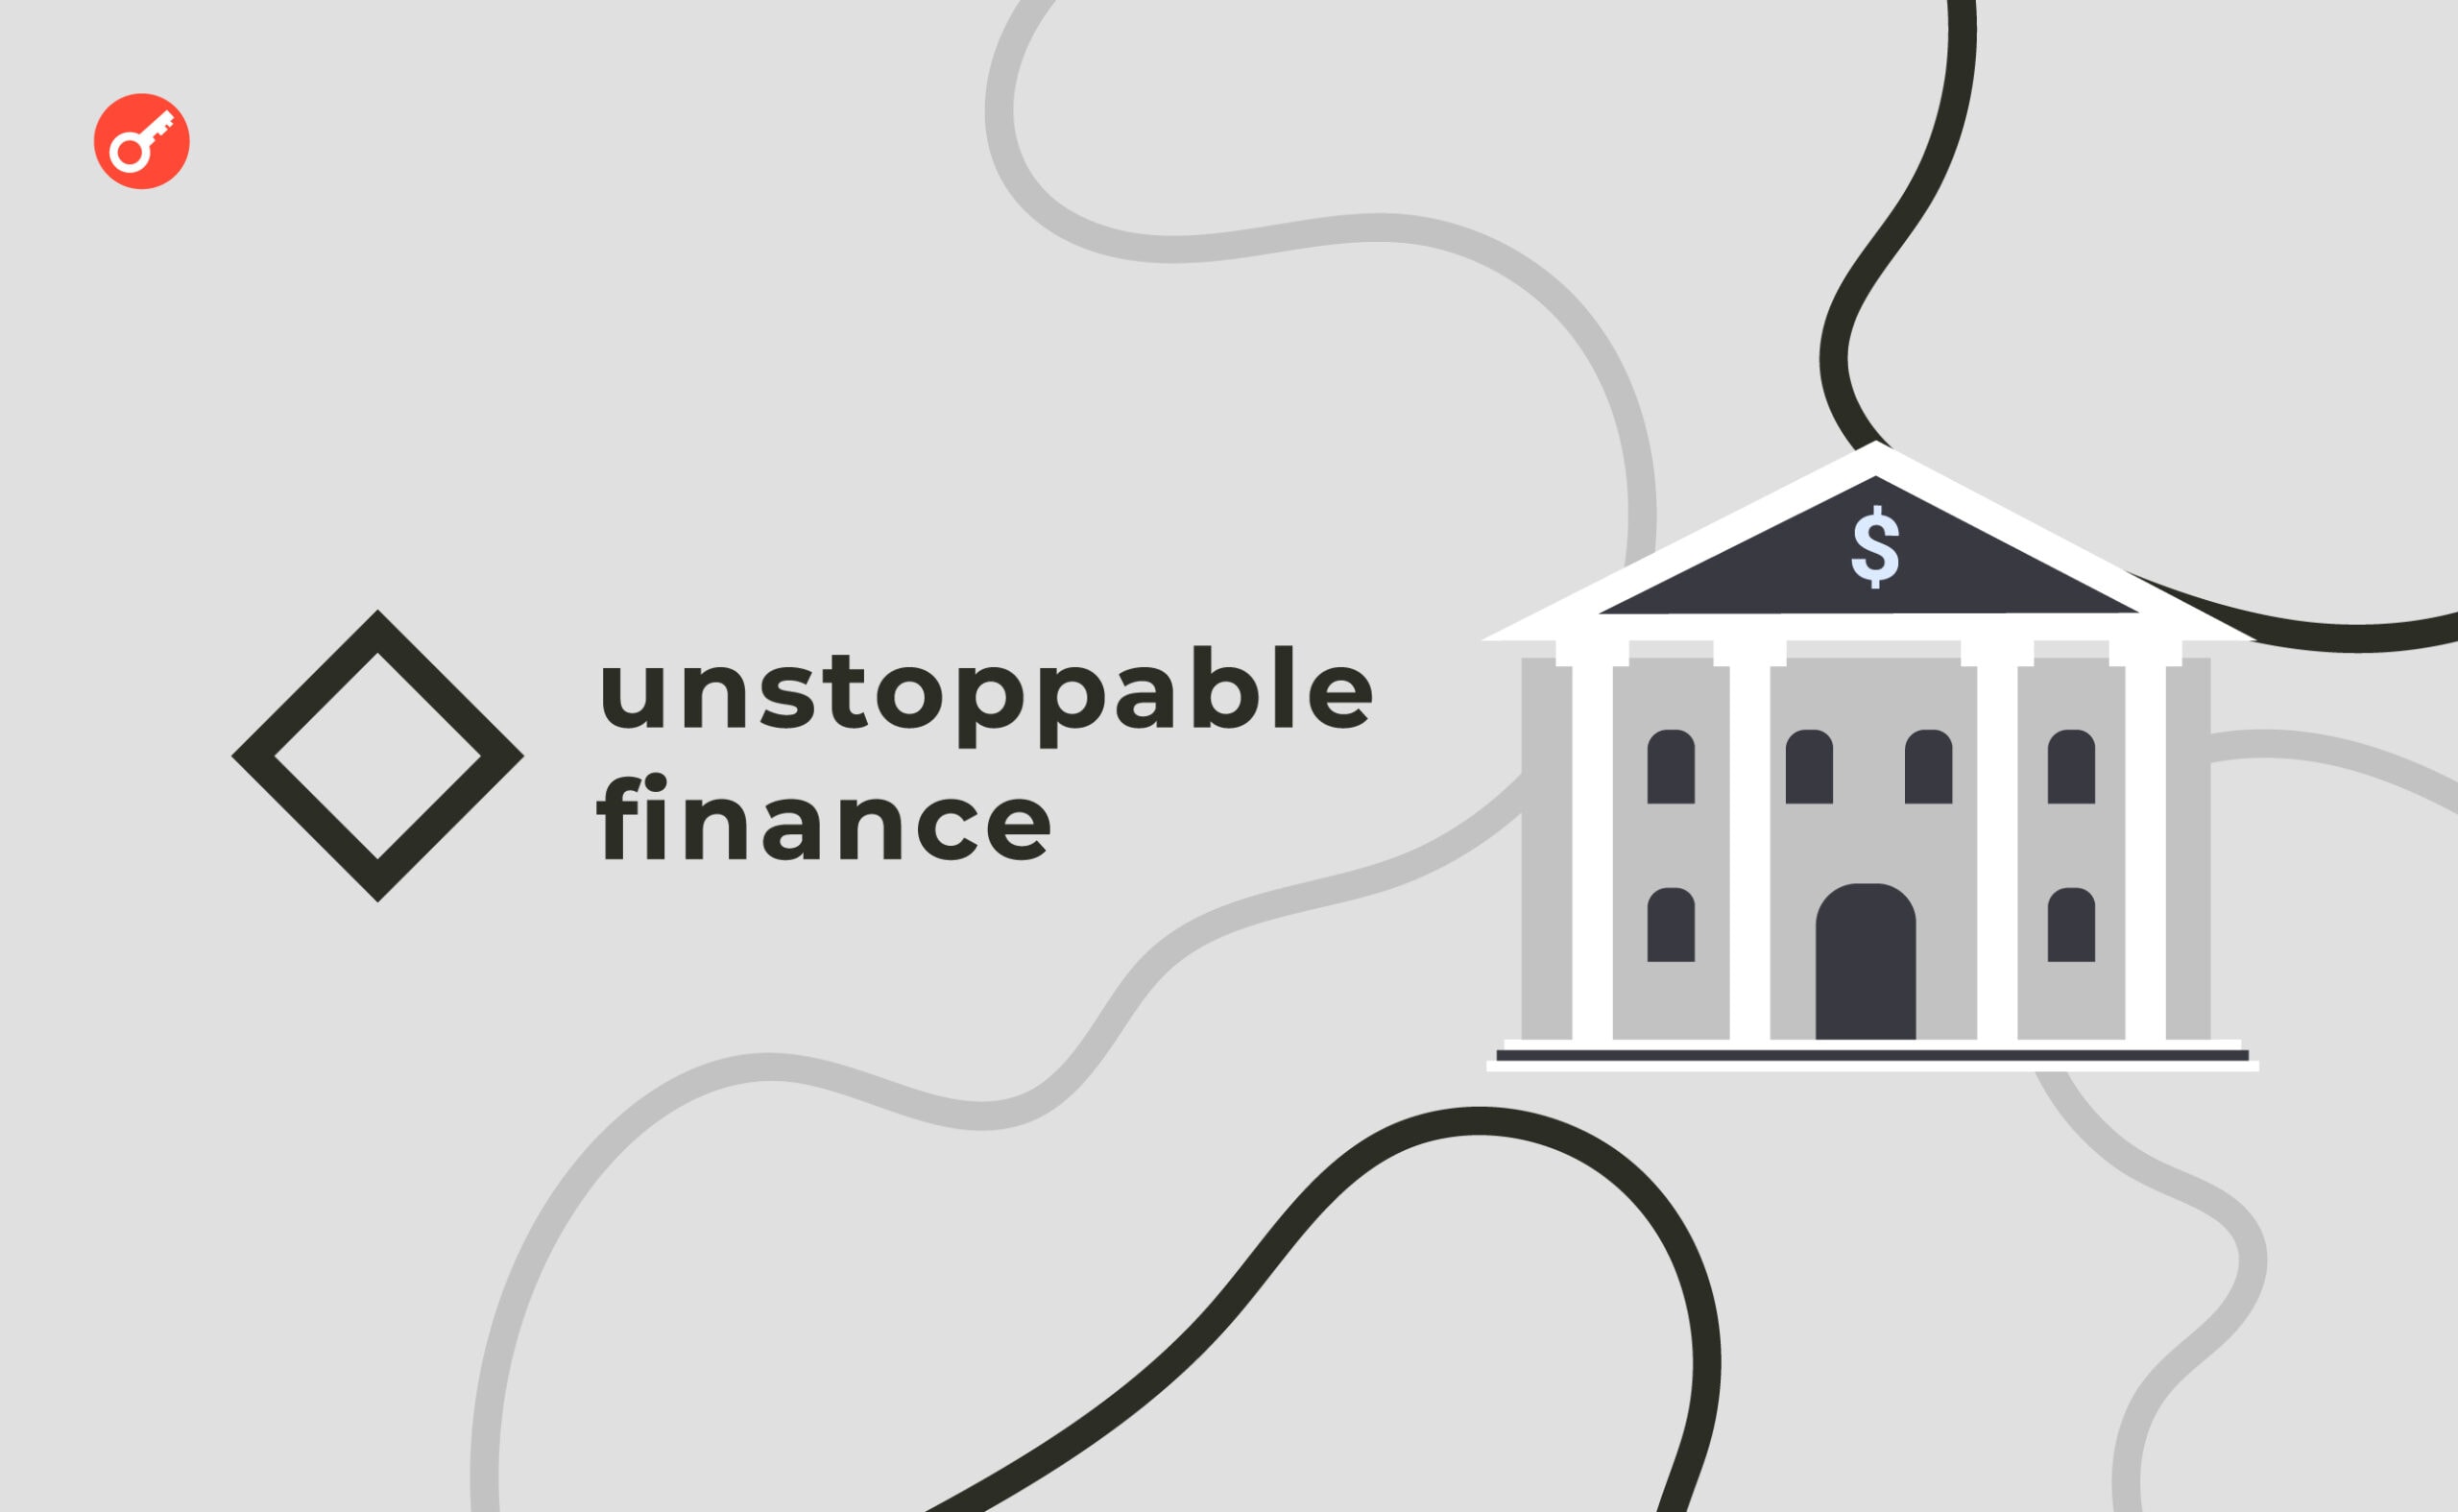 Unstoppable Finance uruchamia pierwszy bank DeFi w Europie. Główny kolaż wiadomości.